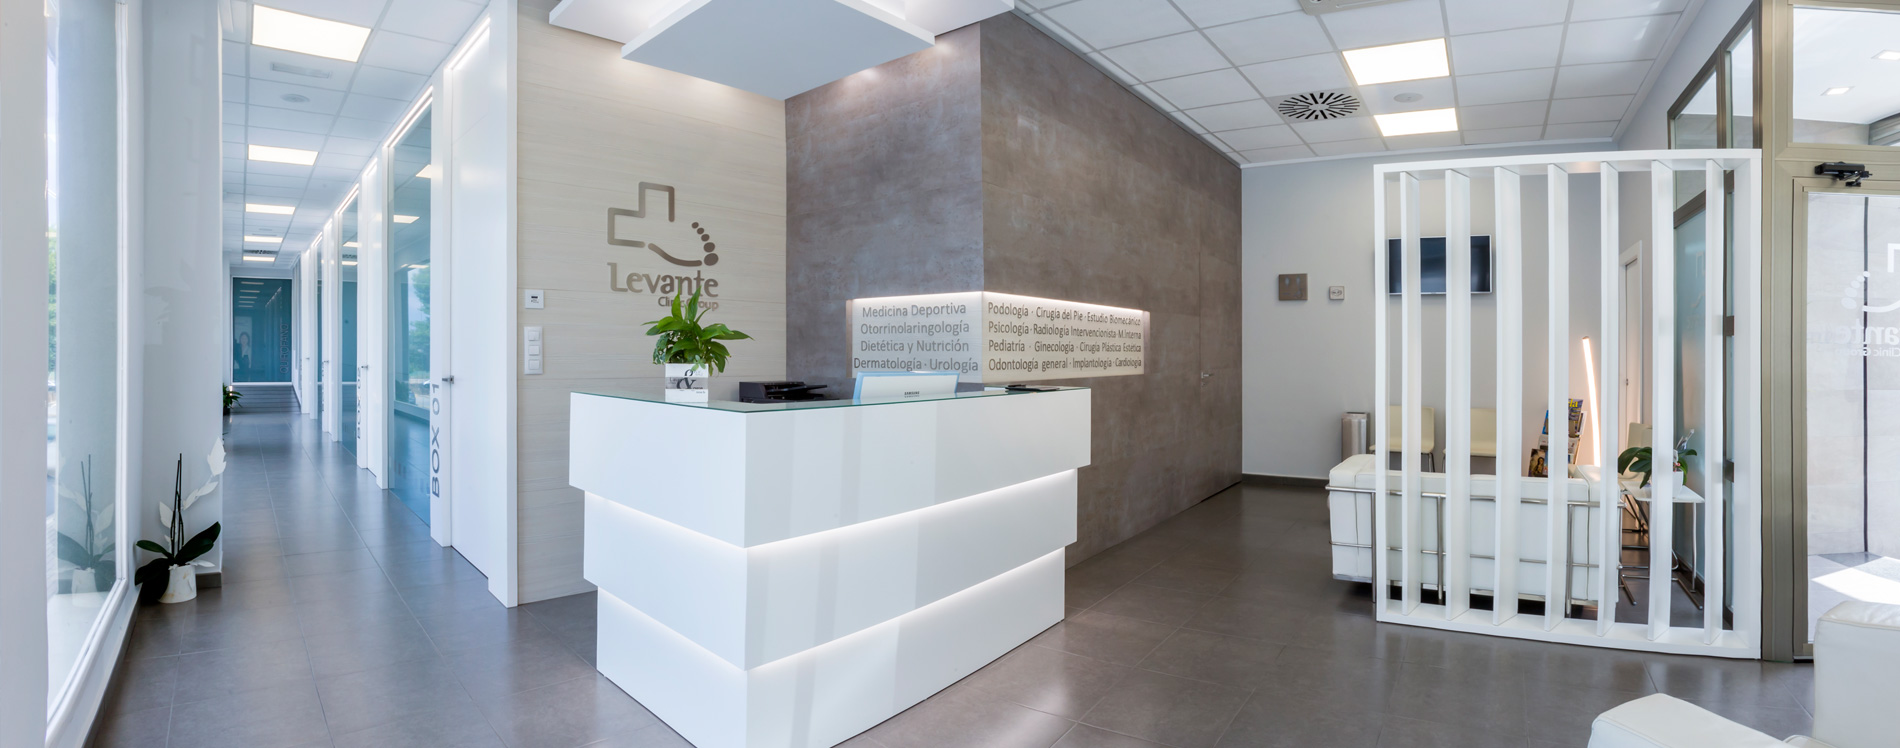 Levante Clinic Group, Centro Médico y Podología en Ondara y Murcia